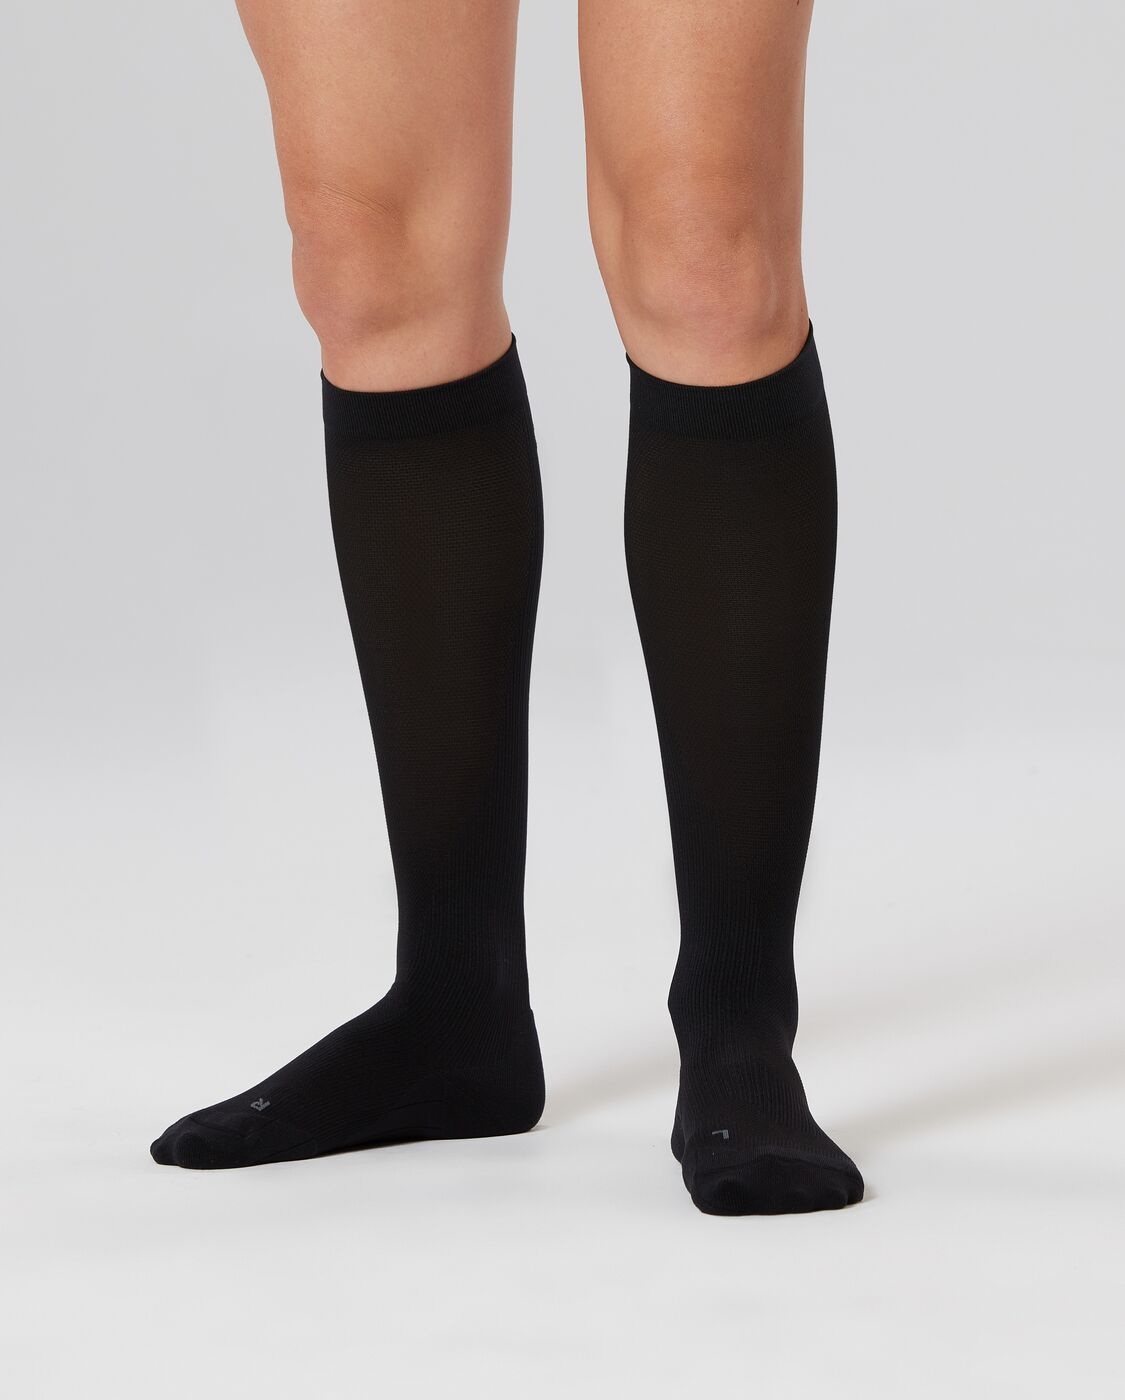 Compression Socks – 2XU NZ